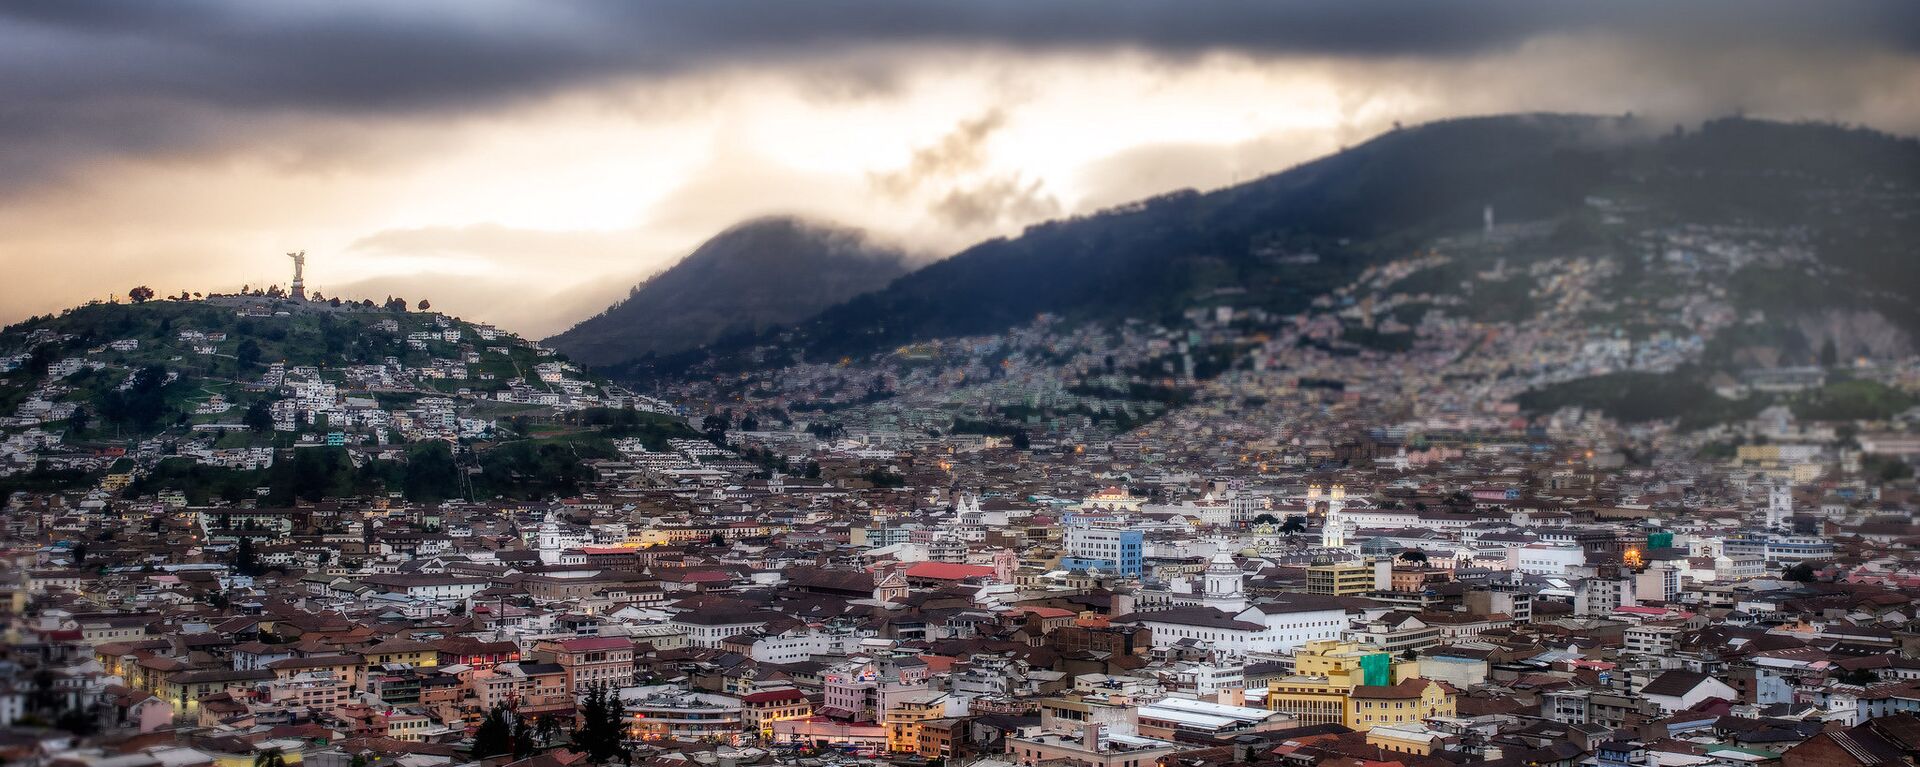 Quito, la capital de Ecuador - Sputnik Mundo, 1920, 17.02.2021